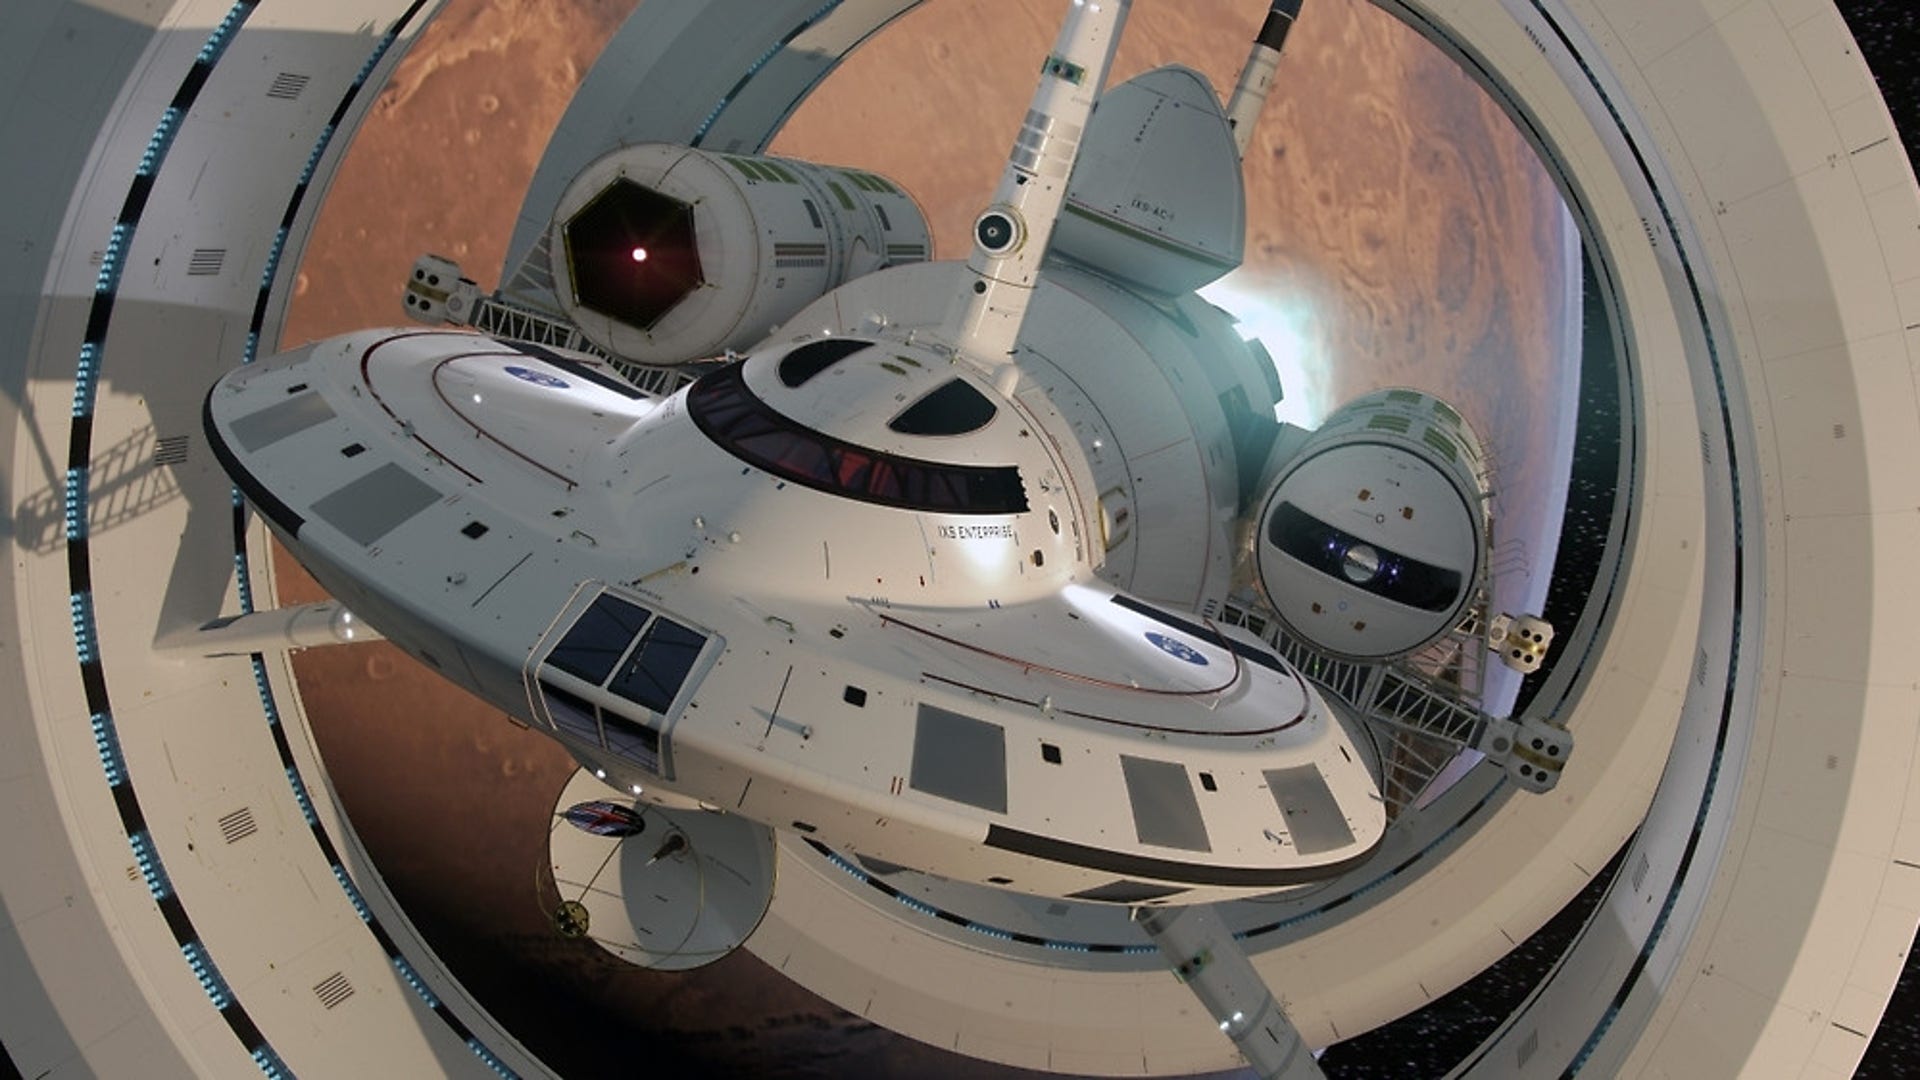 Stunning spaceship concept designs | Fox News